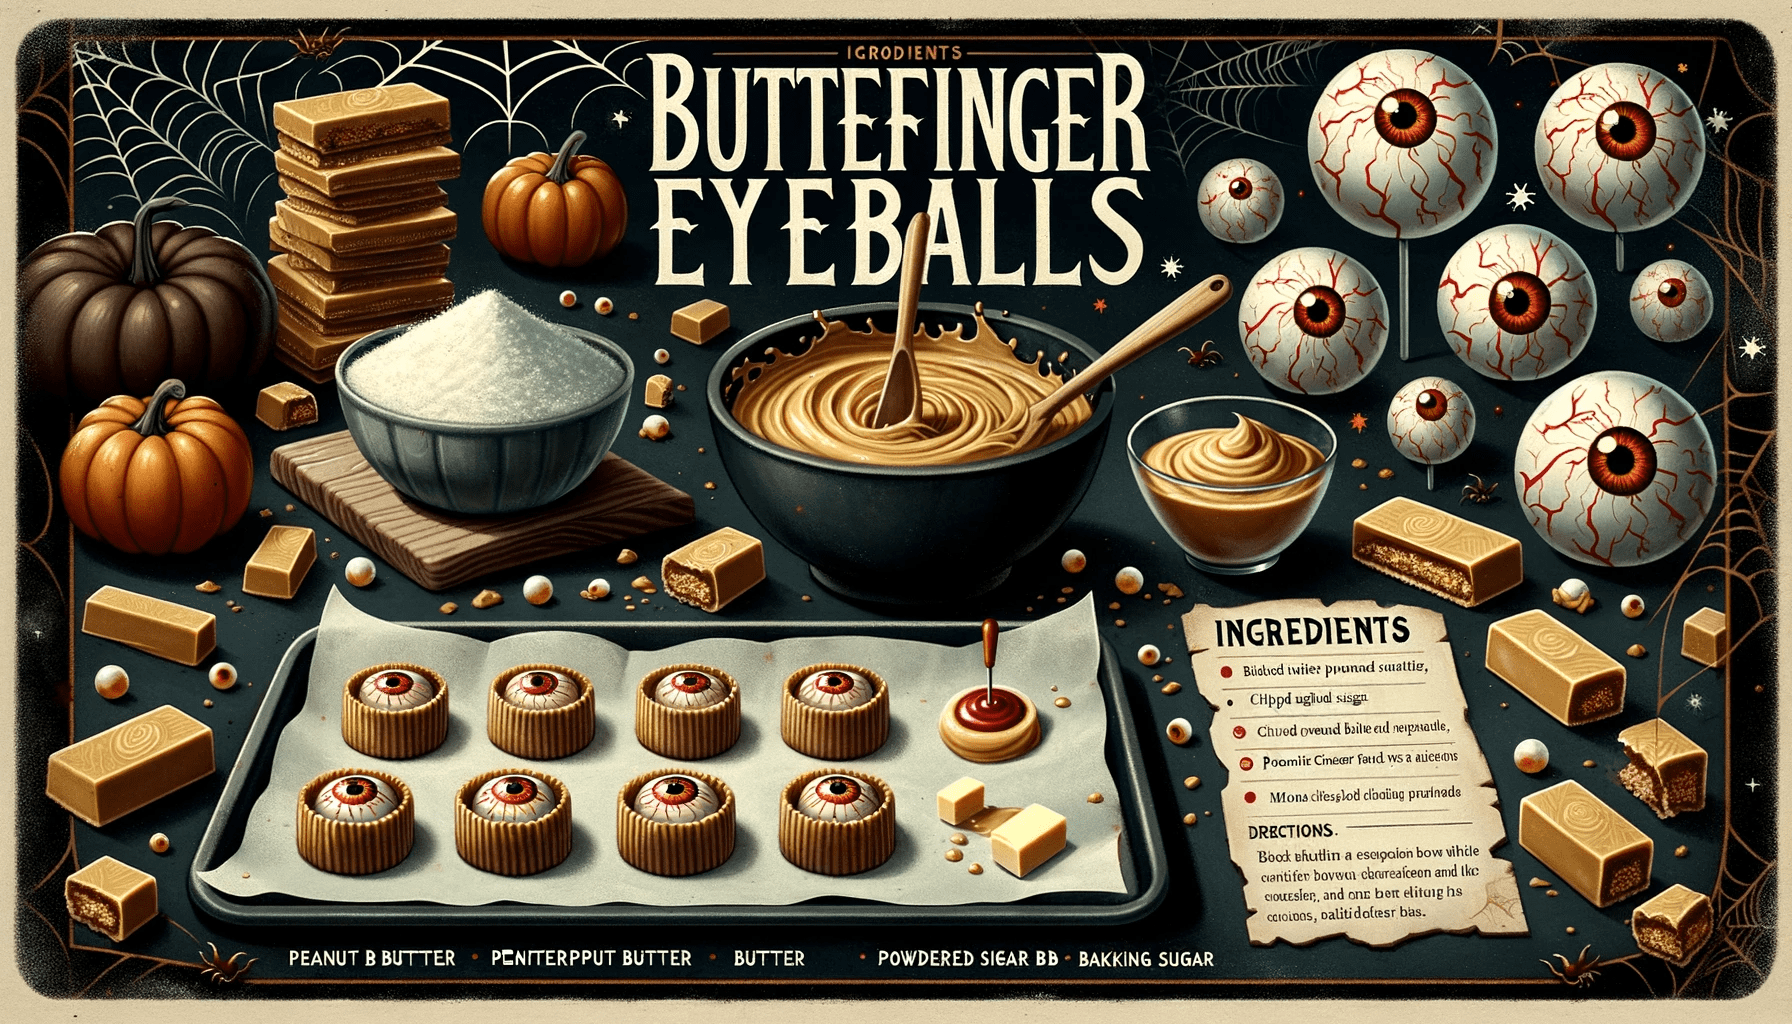 Butterfinger Eyeballs